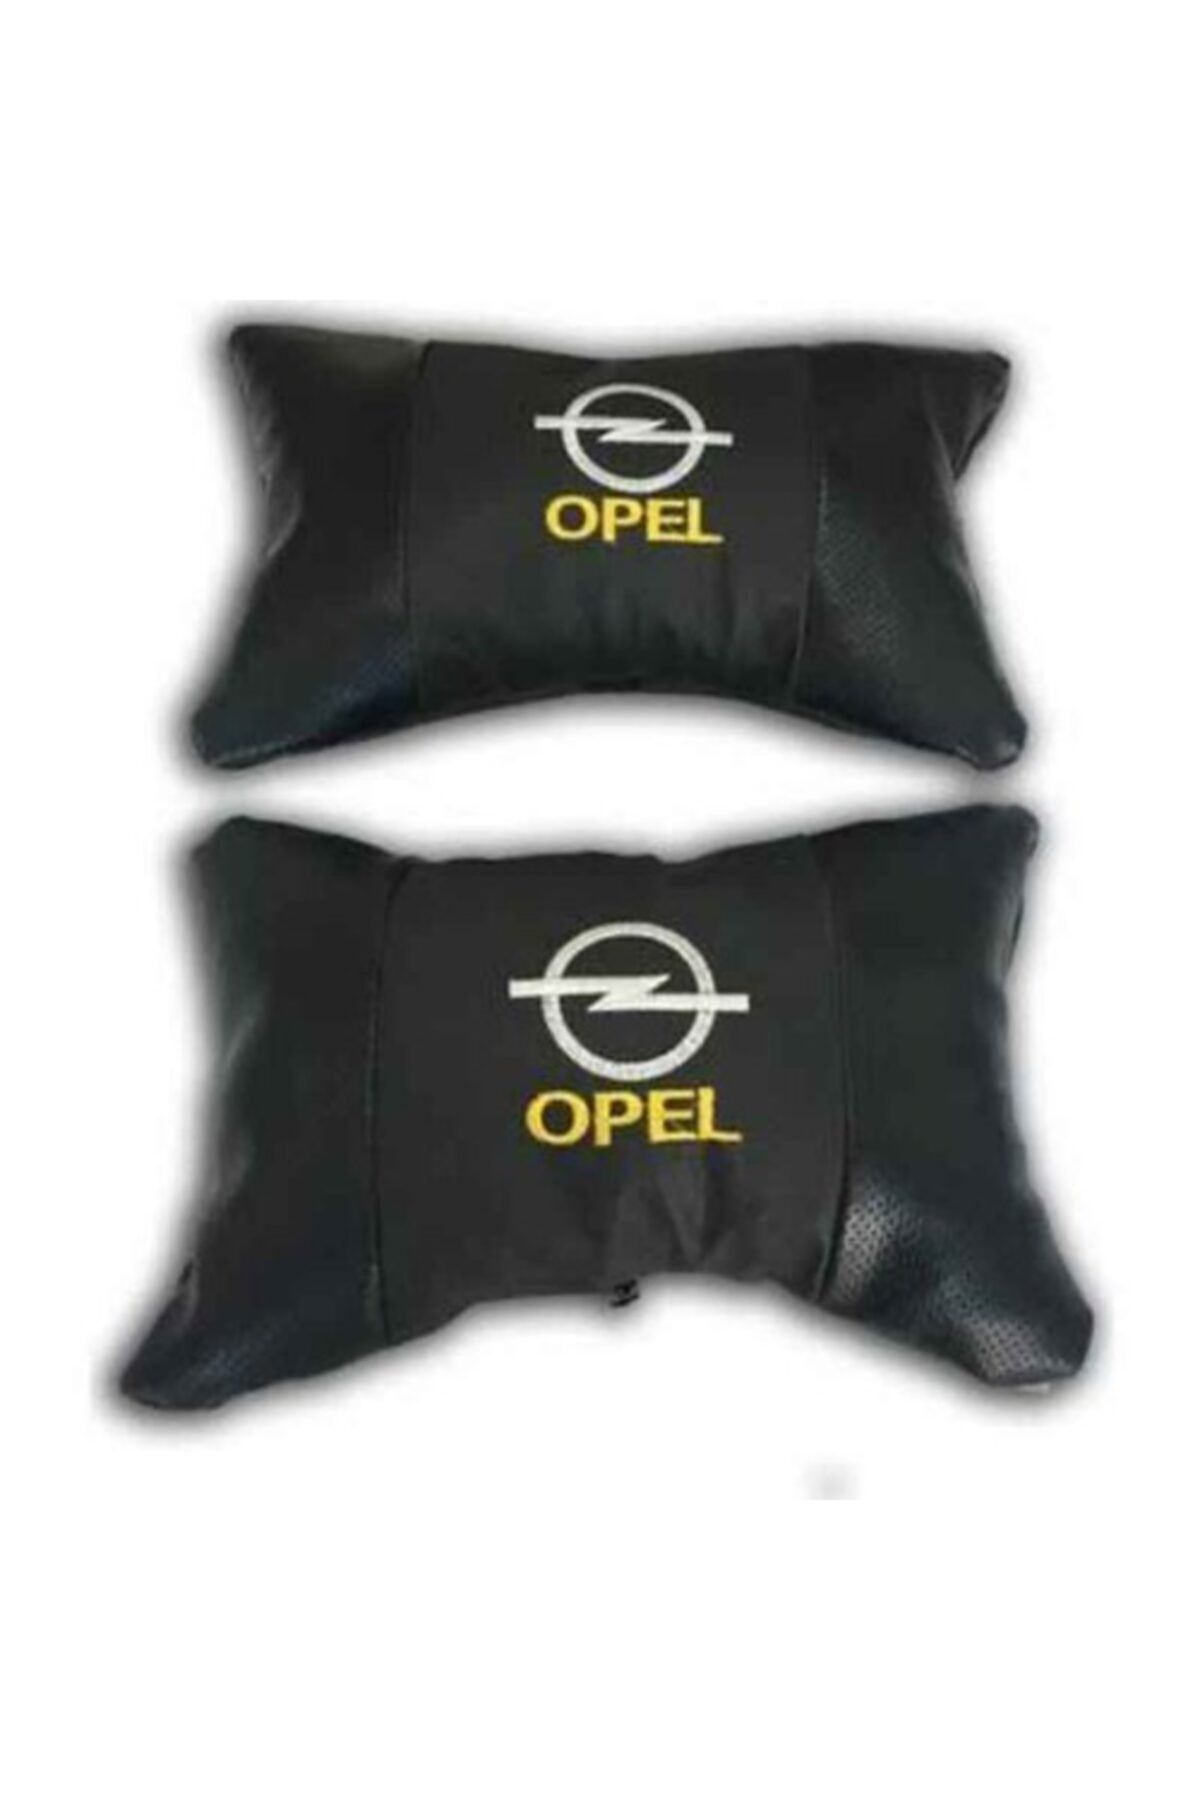 Carub Opel Baskılı Deri Boyun Yastığı 2 Adet